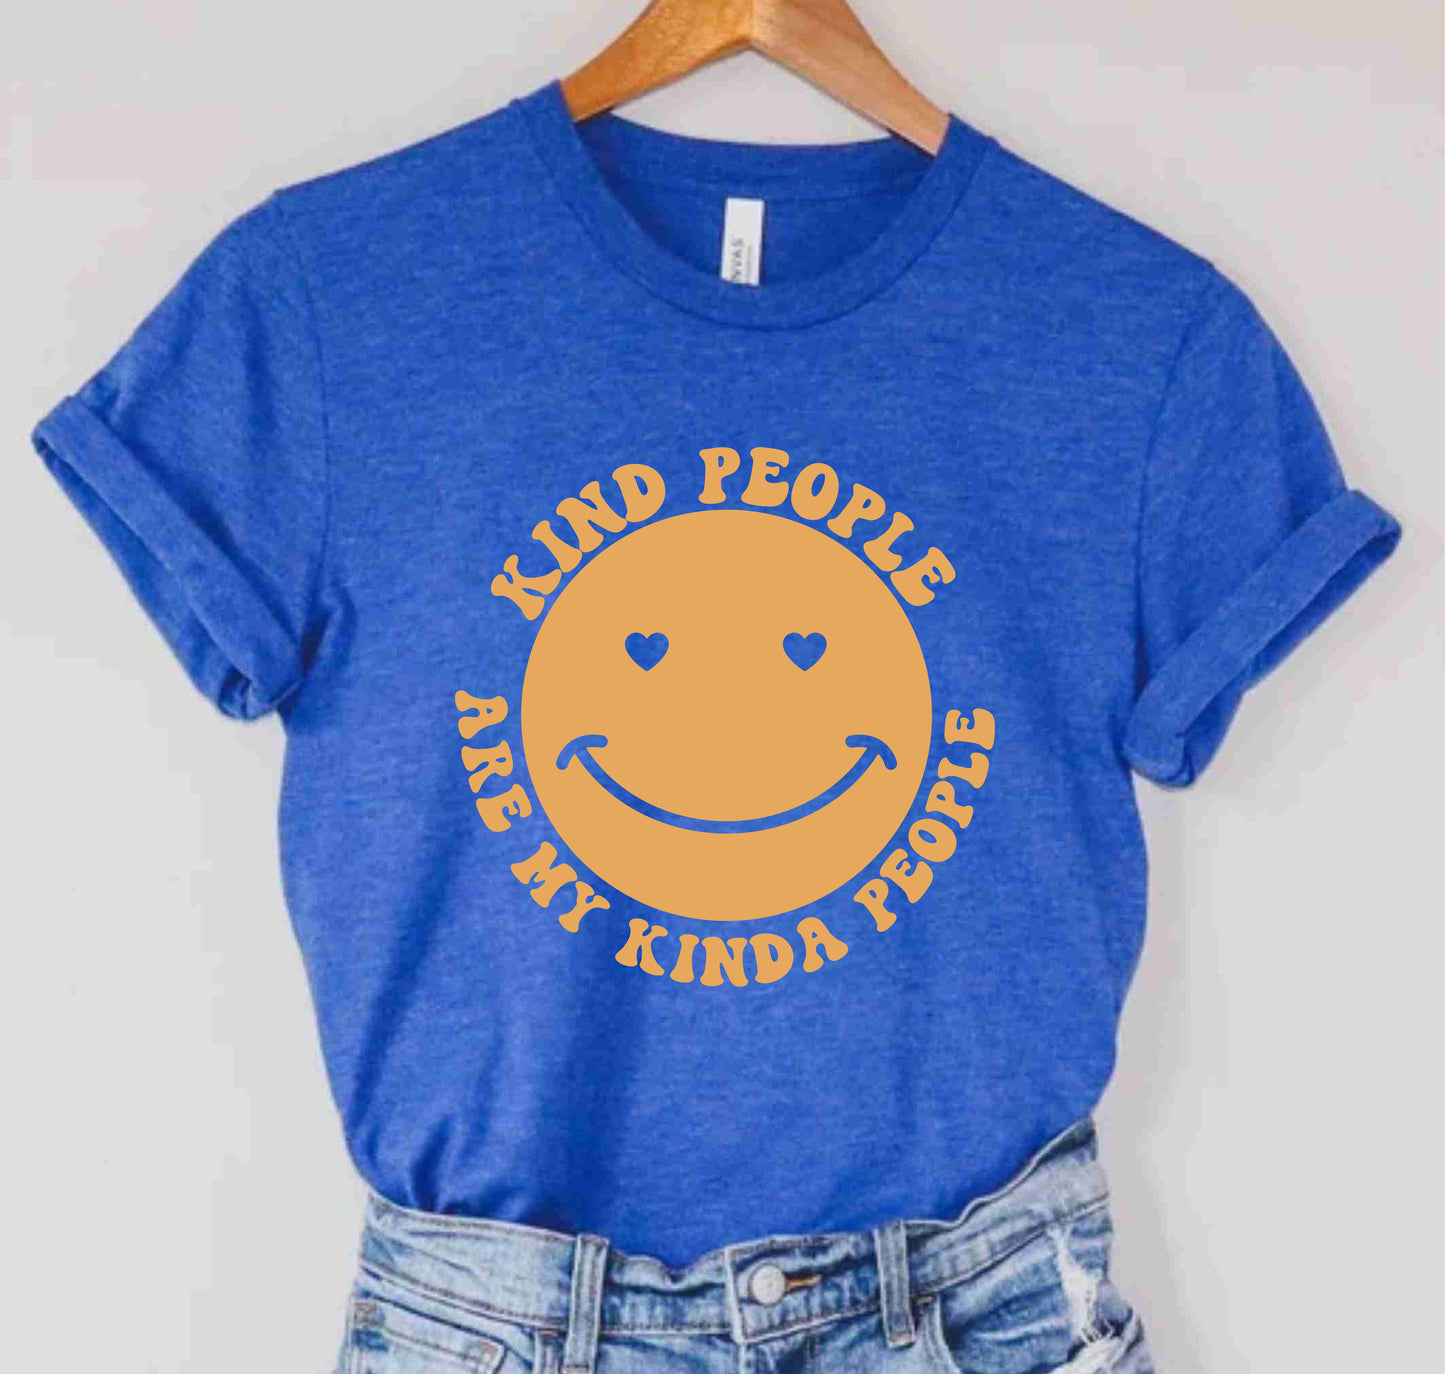 Kind People Are My Kinda People Kindness Mental Health Teacher Shirt